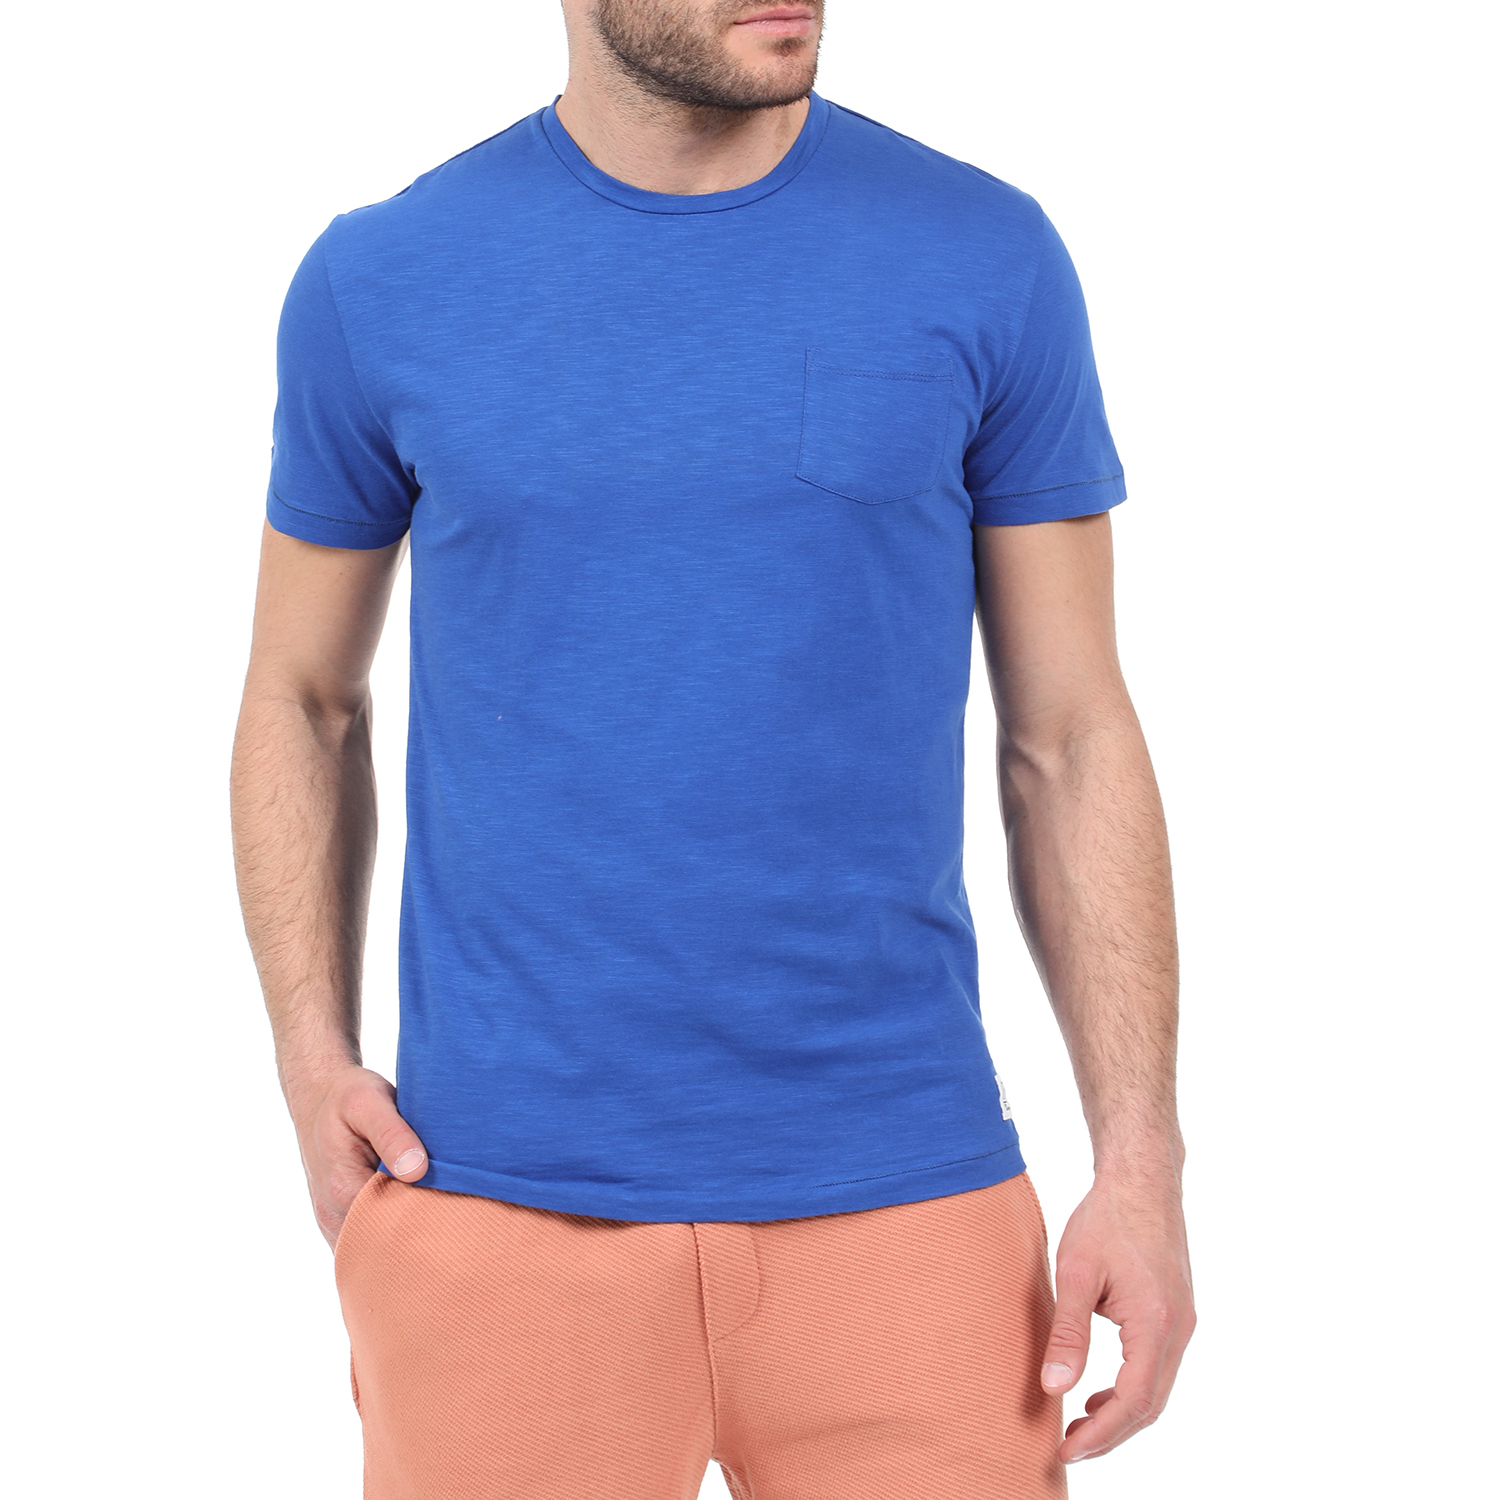 Ανδρικά/Ρούχα/Μπλούζες/Κοντομάνικες DIRTY LAUNDRY - Ανδρική κοντομάνικη μπλούζα DIRTY LAUNDRY μπλε